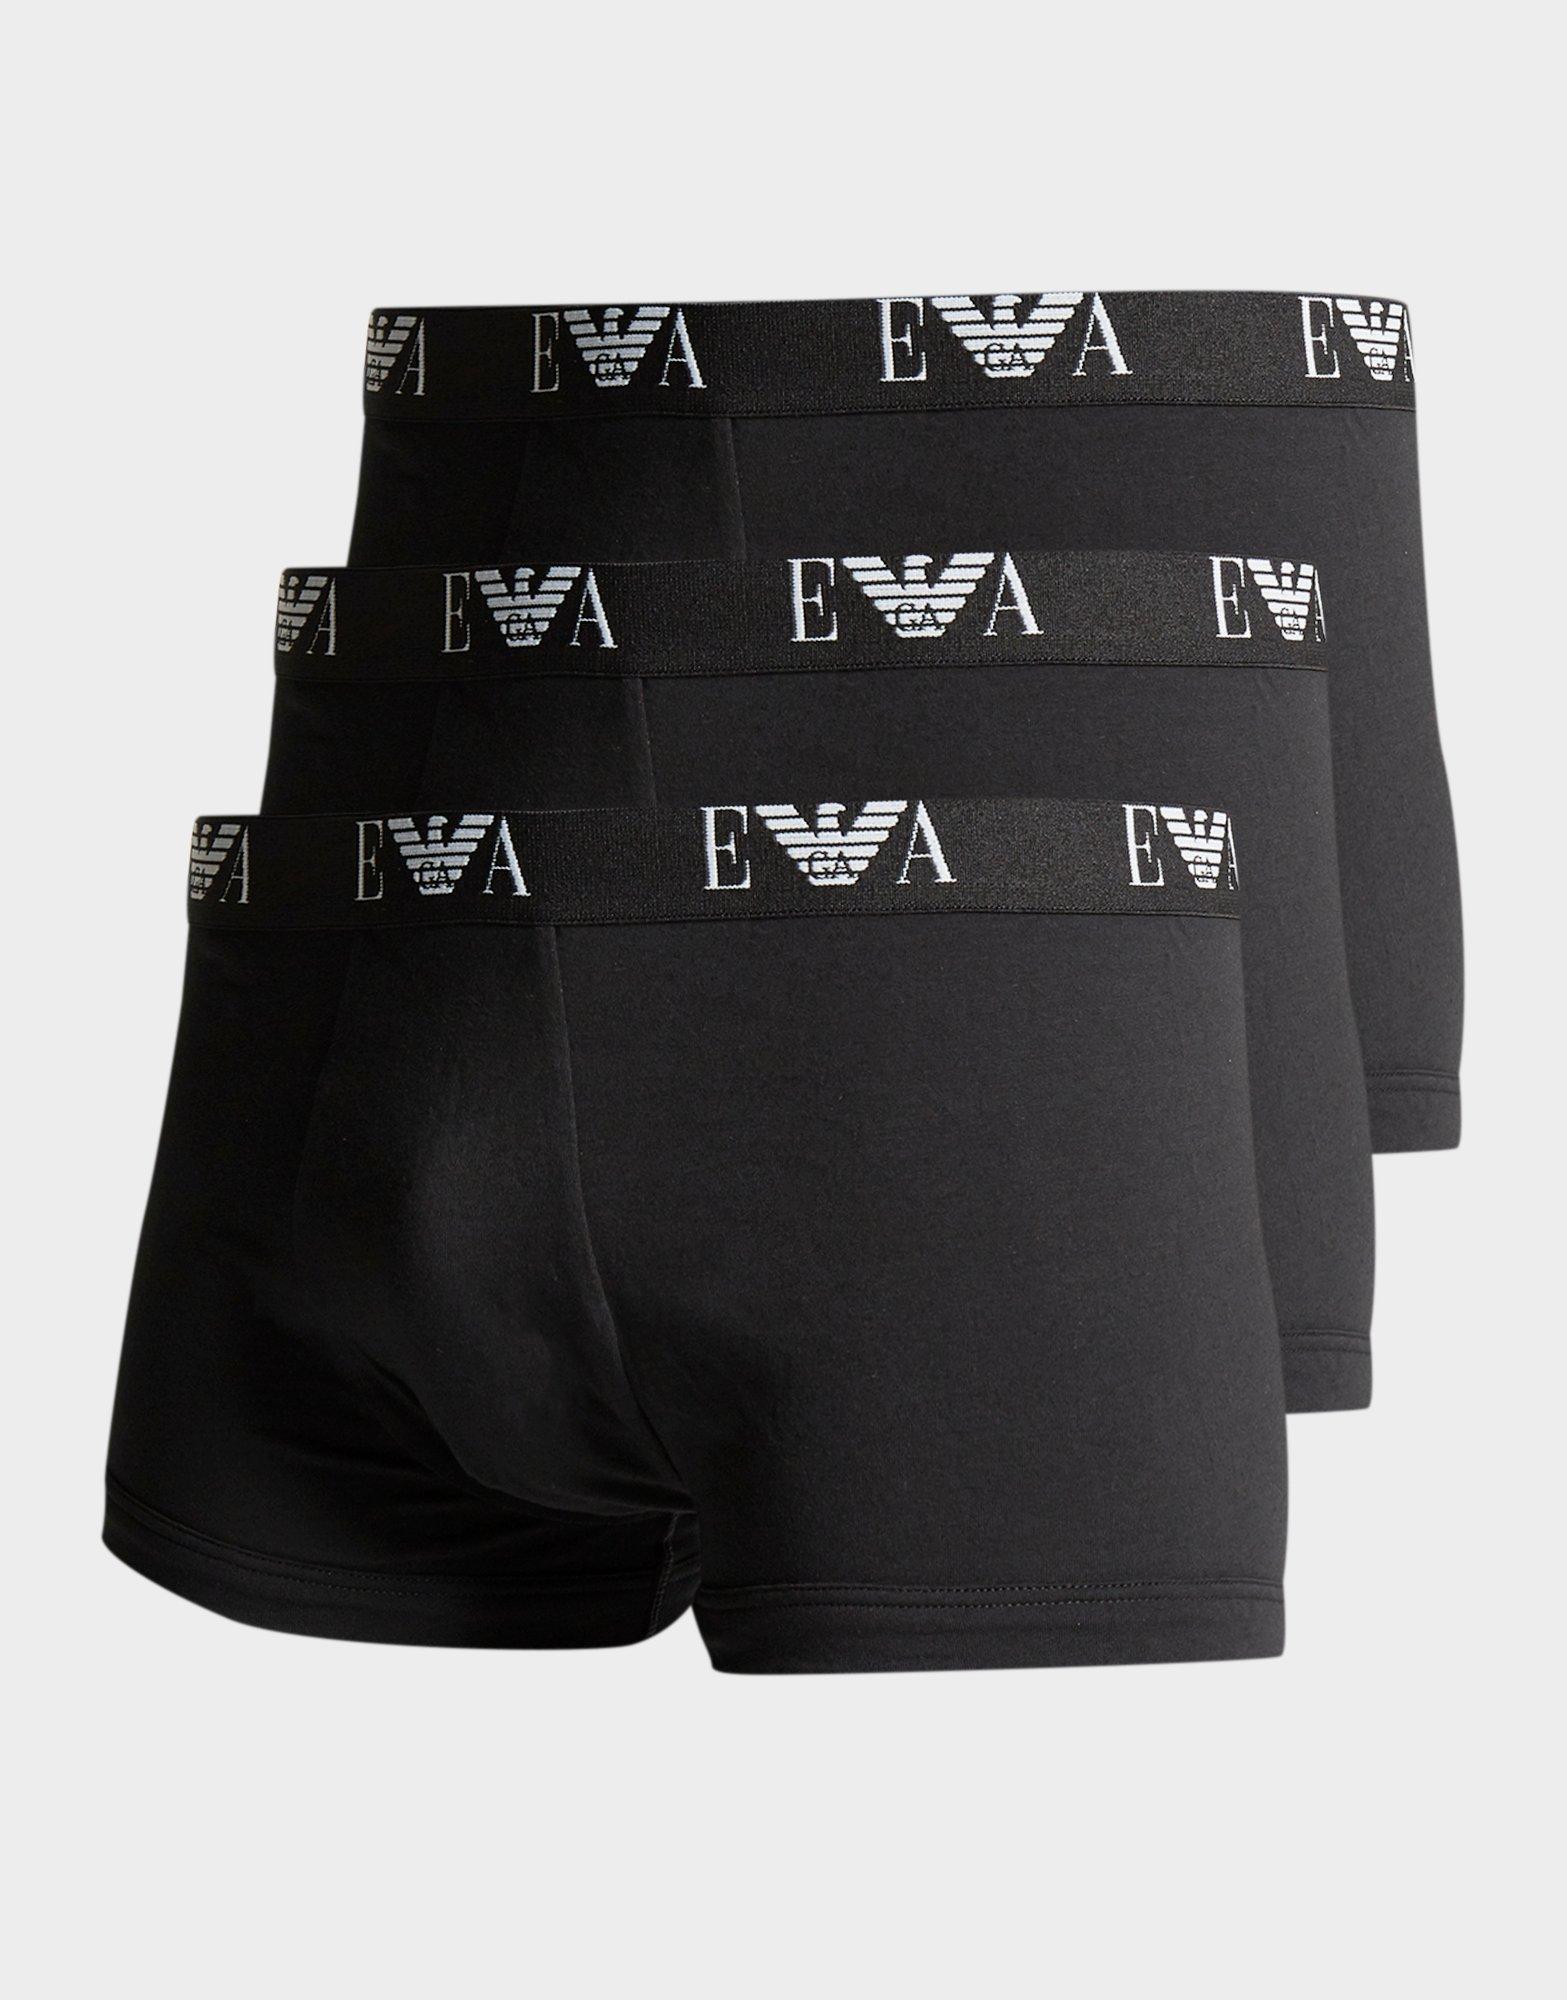 black armani shorts